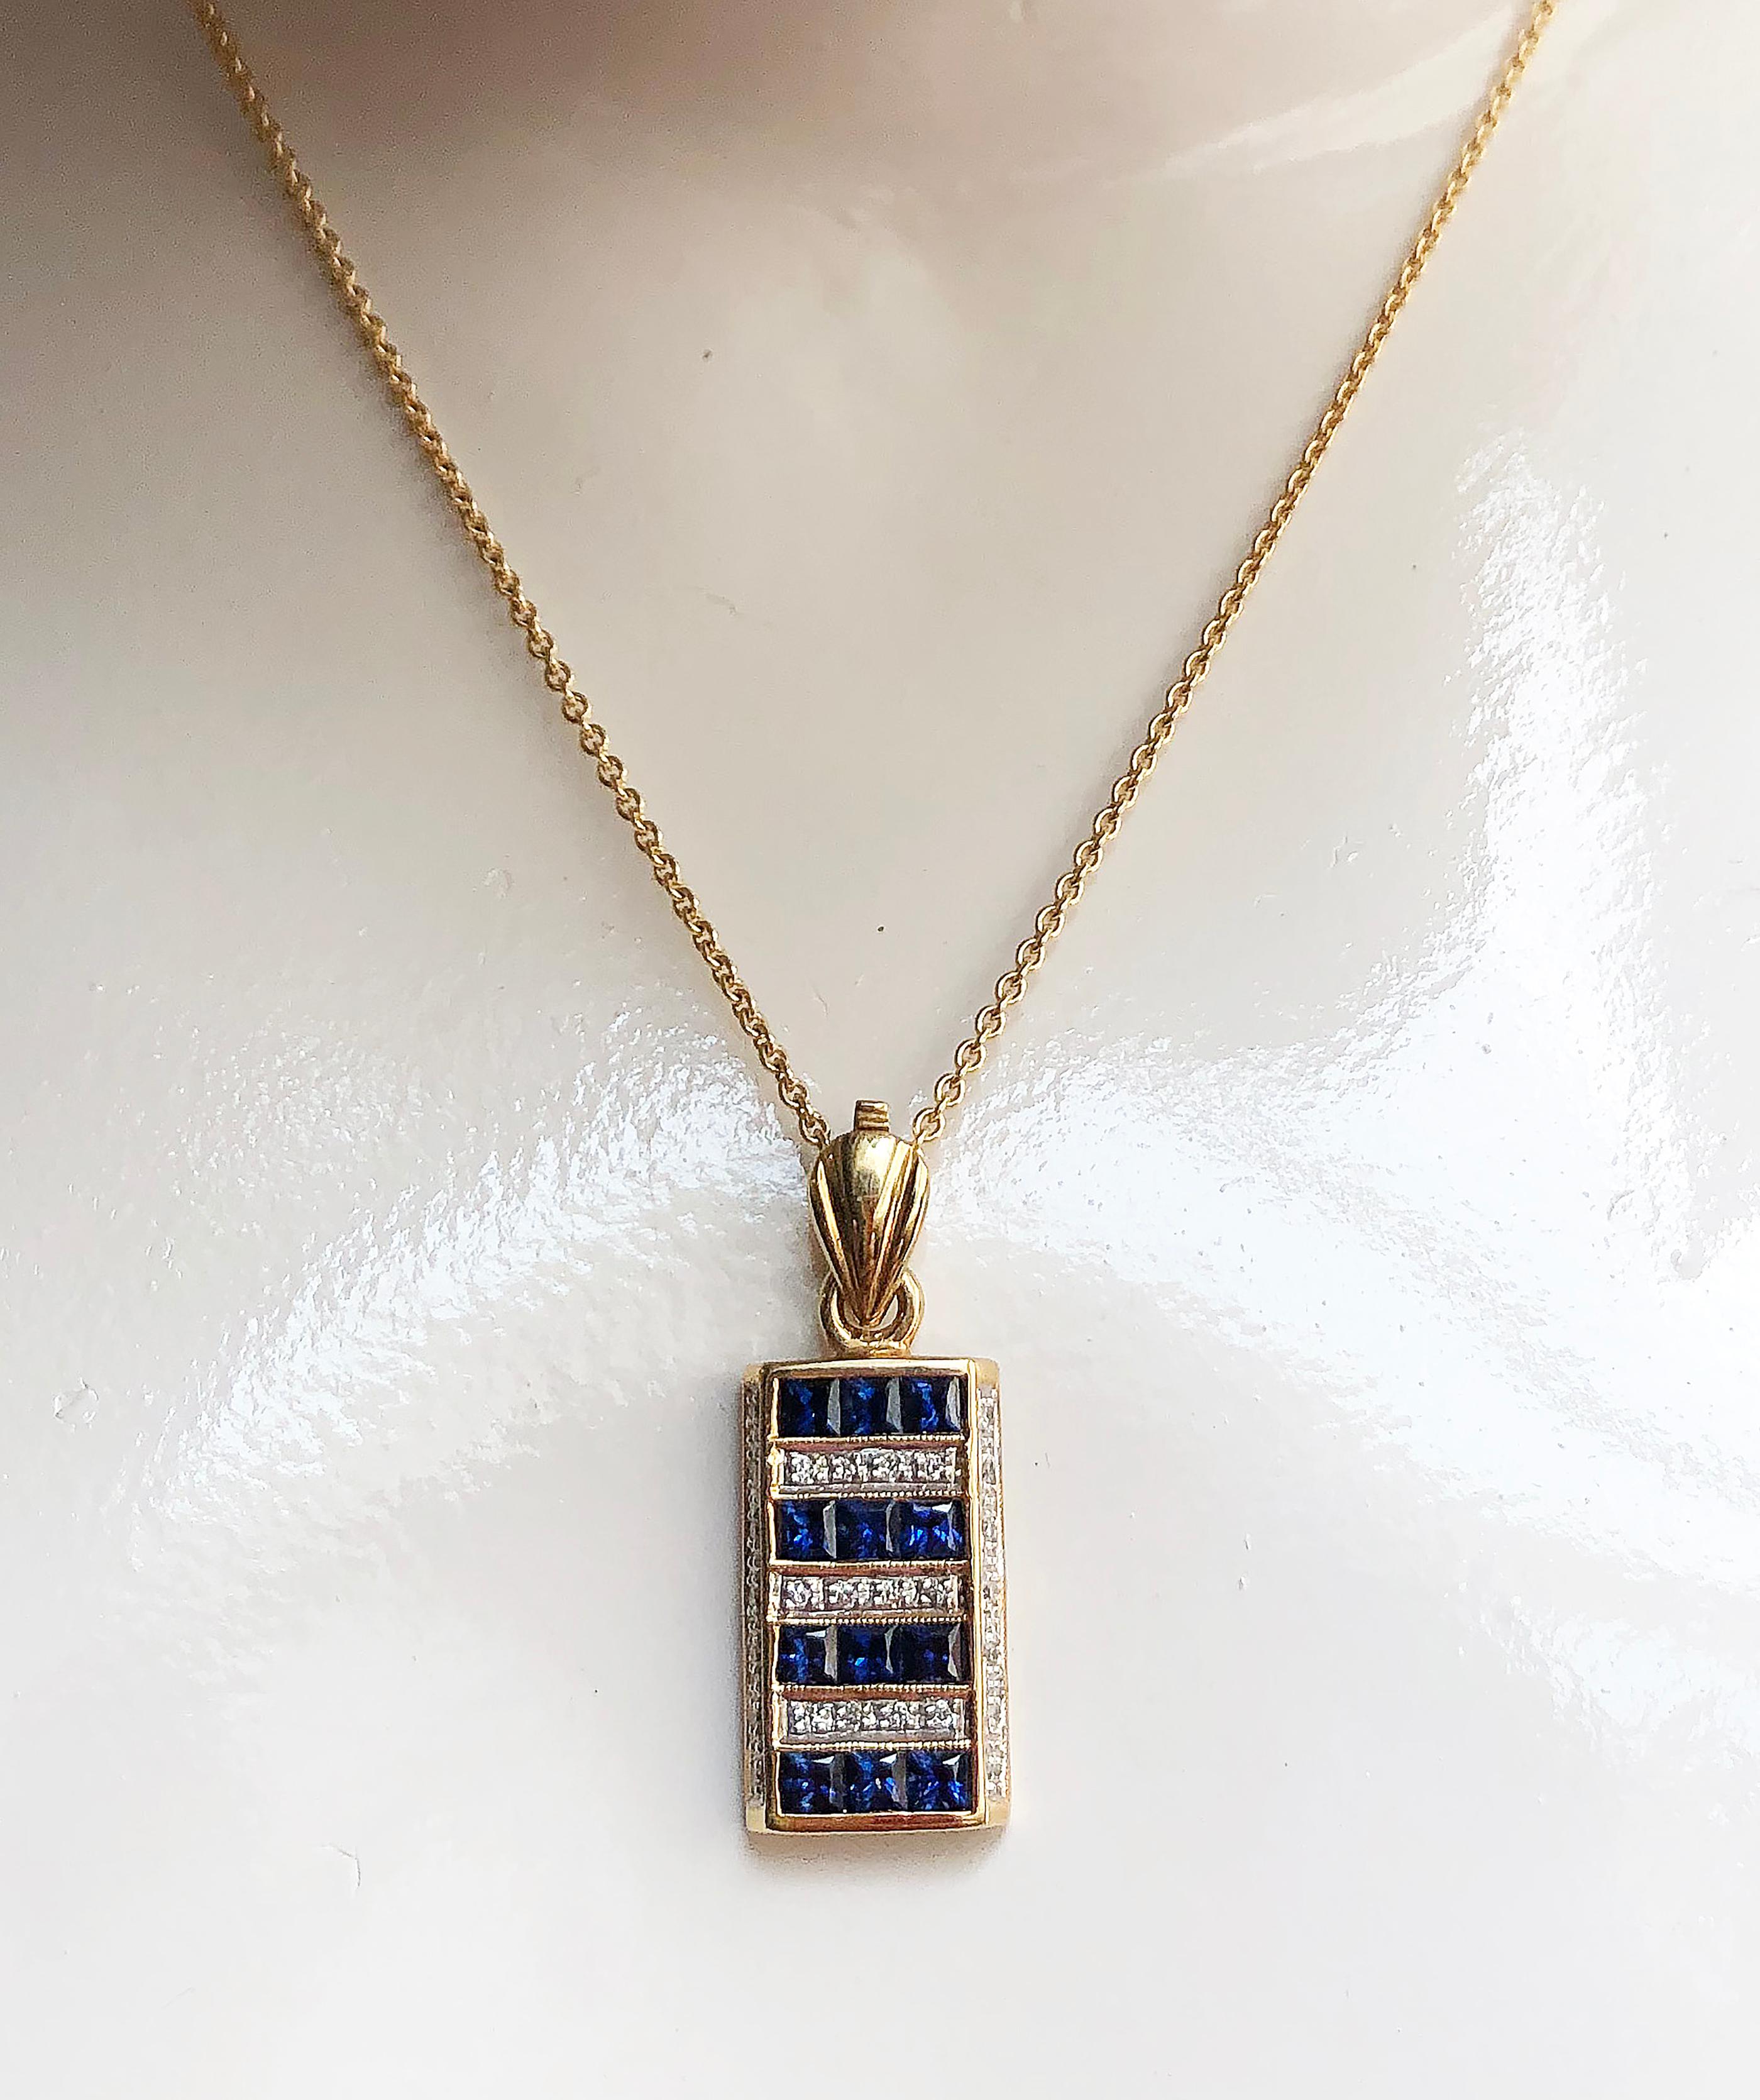 Blauer Saphir 1,54 Karat mit Diamant 0,18 Karat Anhänger in 18 Karat Goldfassung
(Kette nicht enthalten)

Breite: 1,2 cm
Länge: 3,0 cm 

